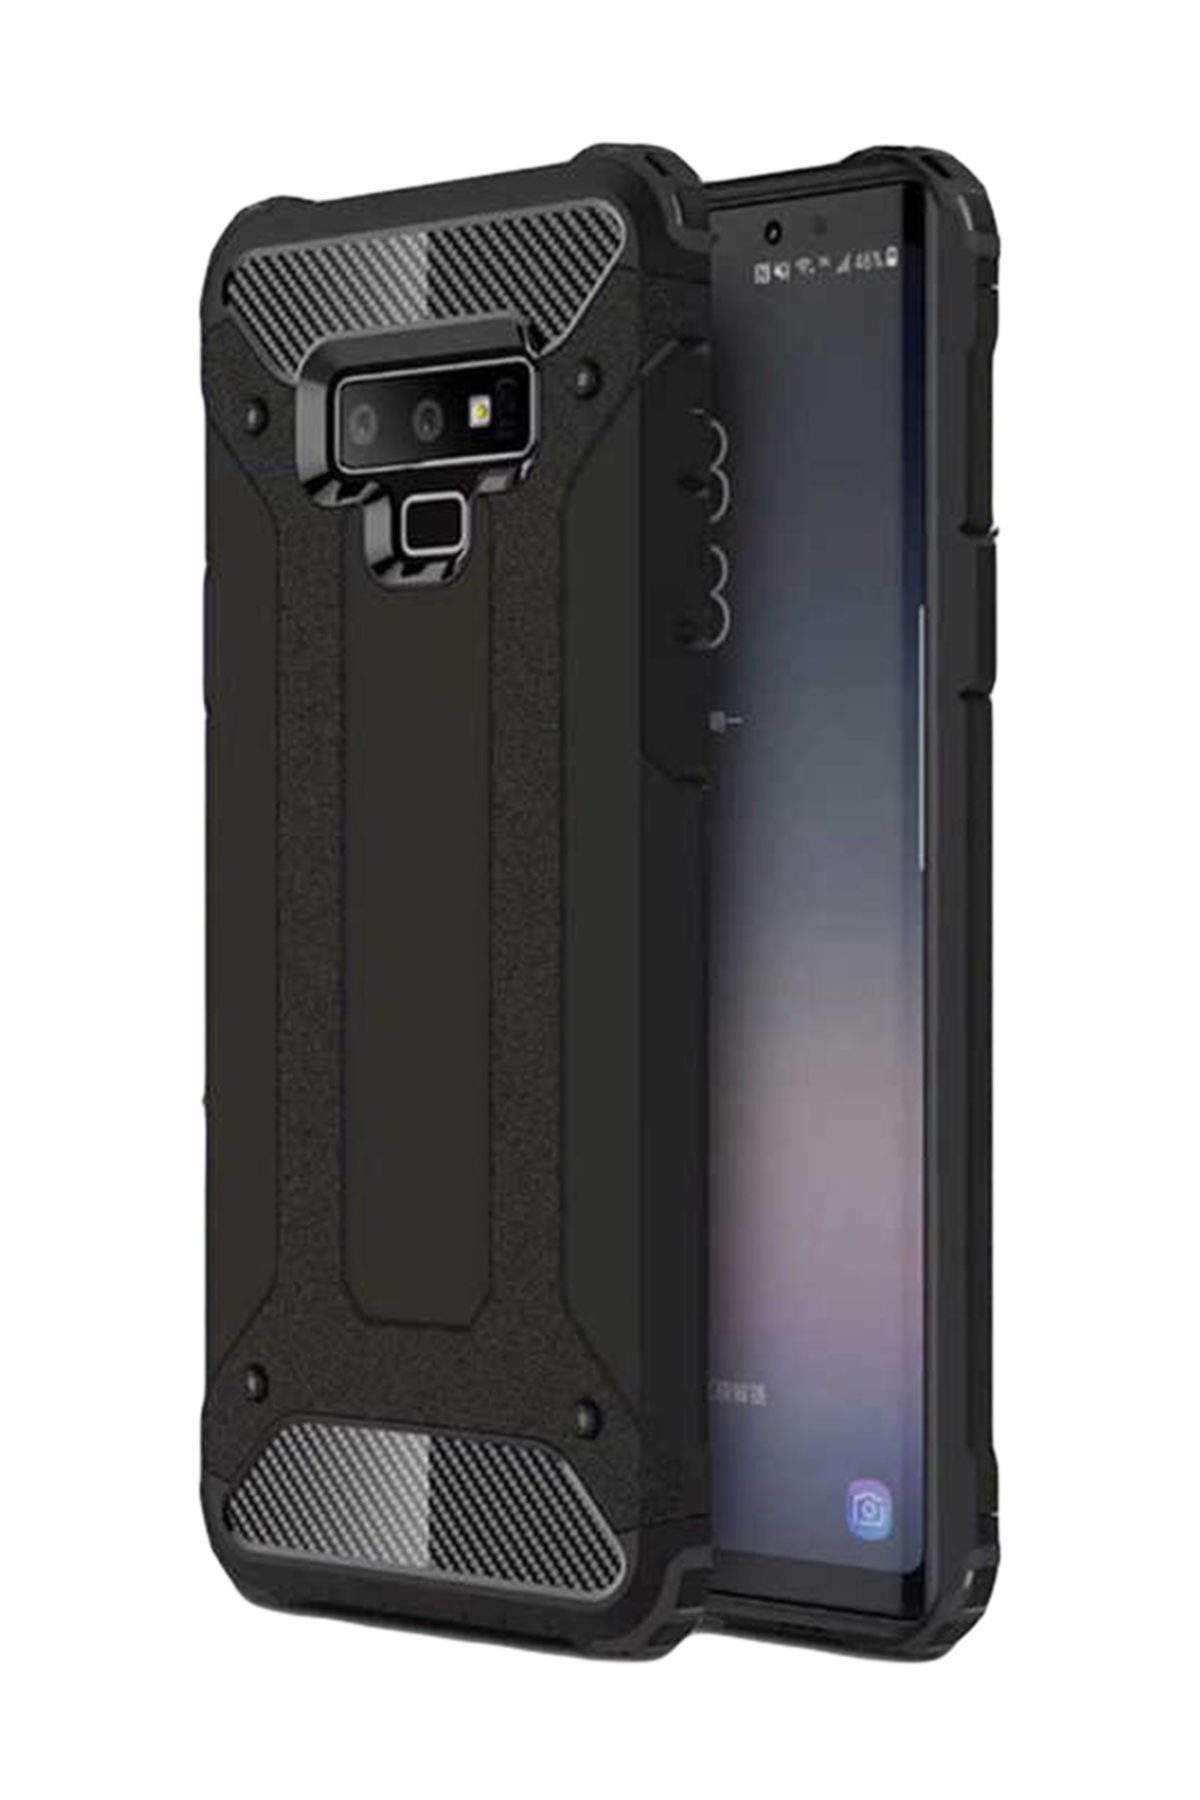 Aksesuarcım Samsung Galaxy Note 9 Kılıf Tam Koruma Tank Zırh Silikon Koruma